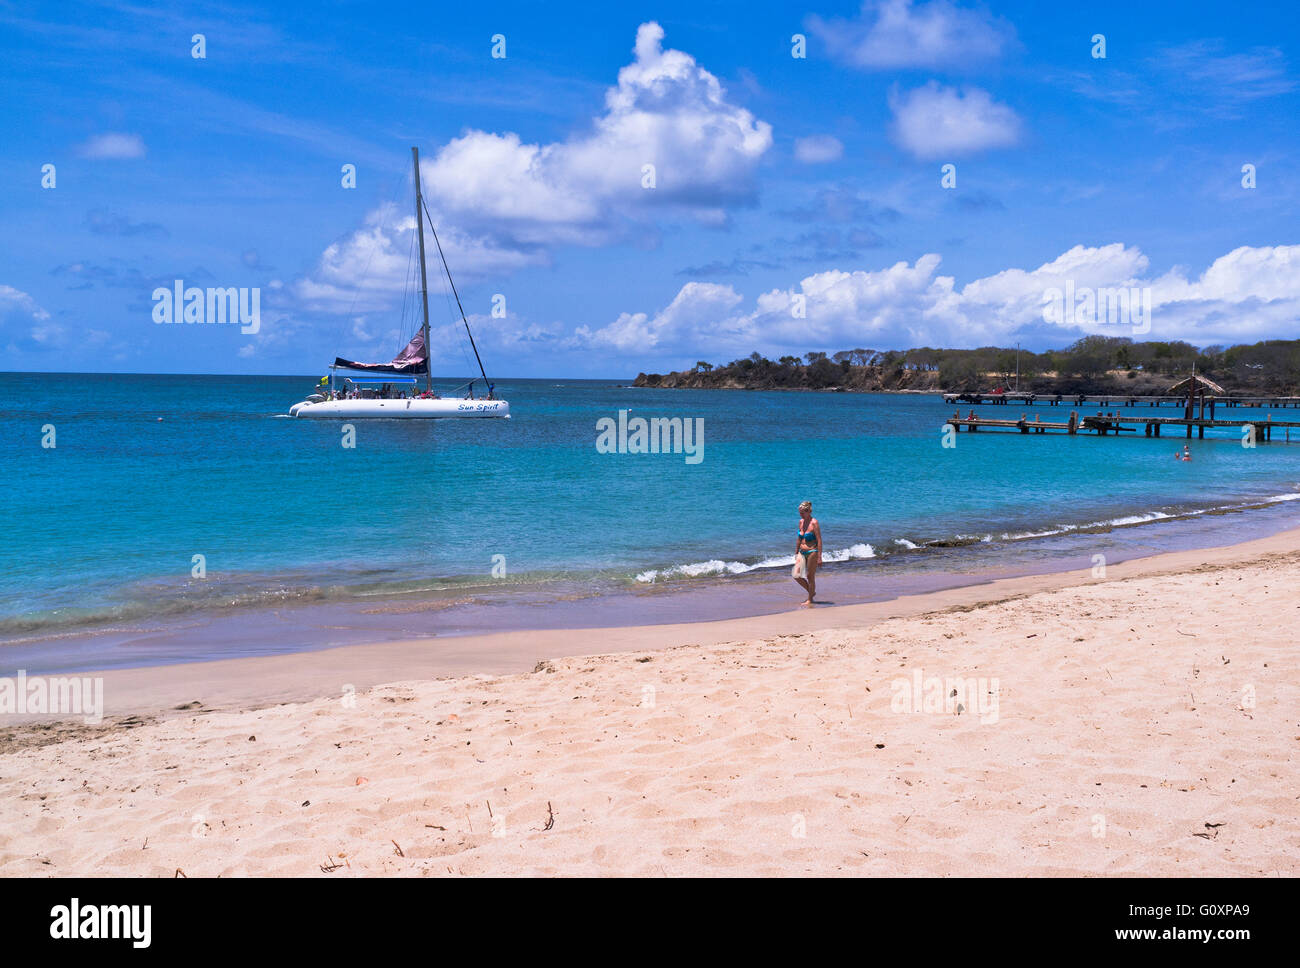 dh Mayreau Island ST VINCENT KARIBIK Saline Bay Yacht eine Frau am Strand spazieren St. Vincent und die Grenadinen idyllischer Urlaub Stockfoto